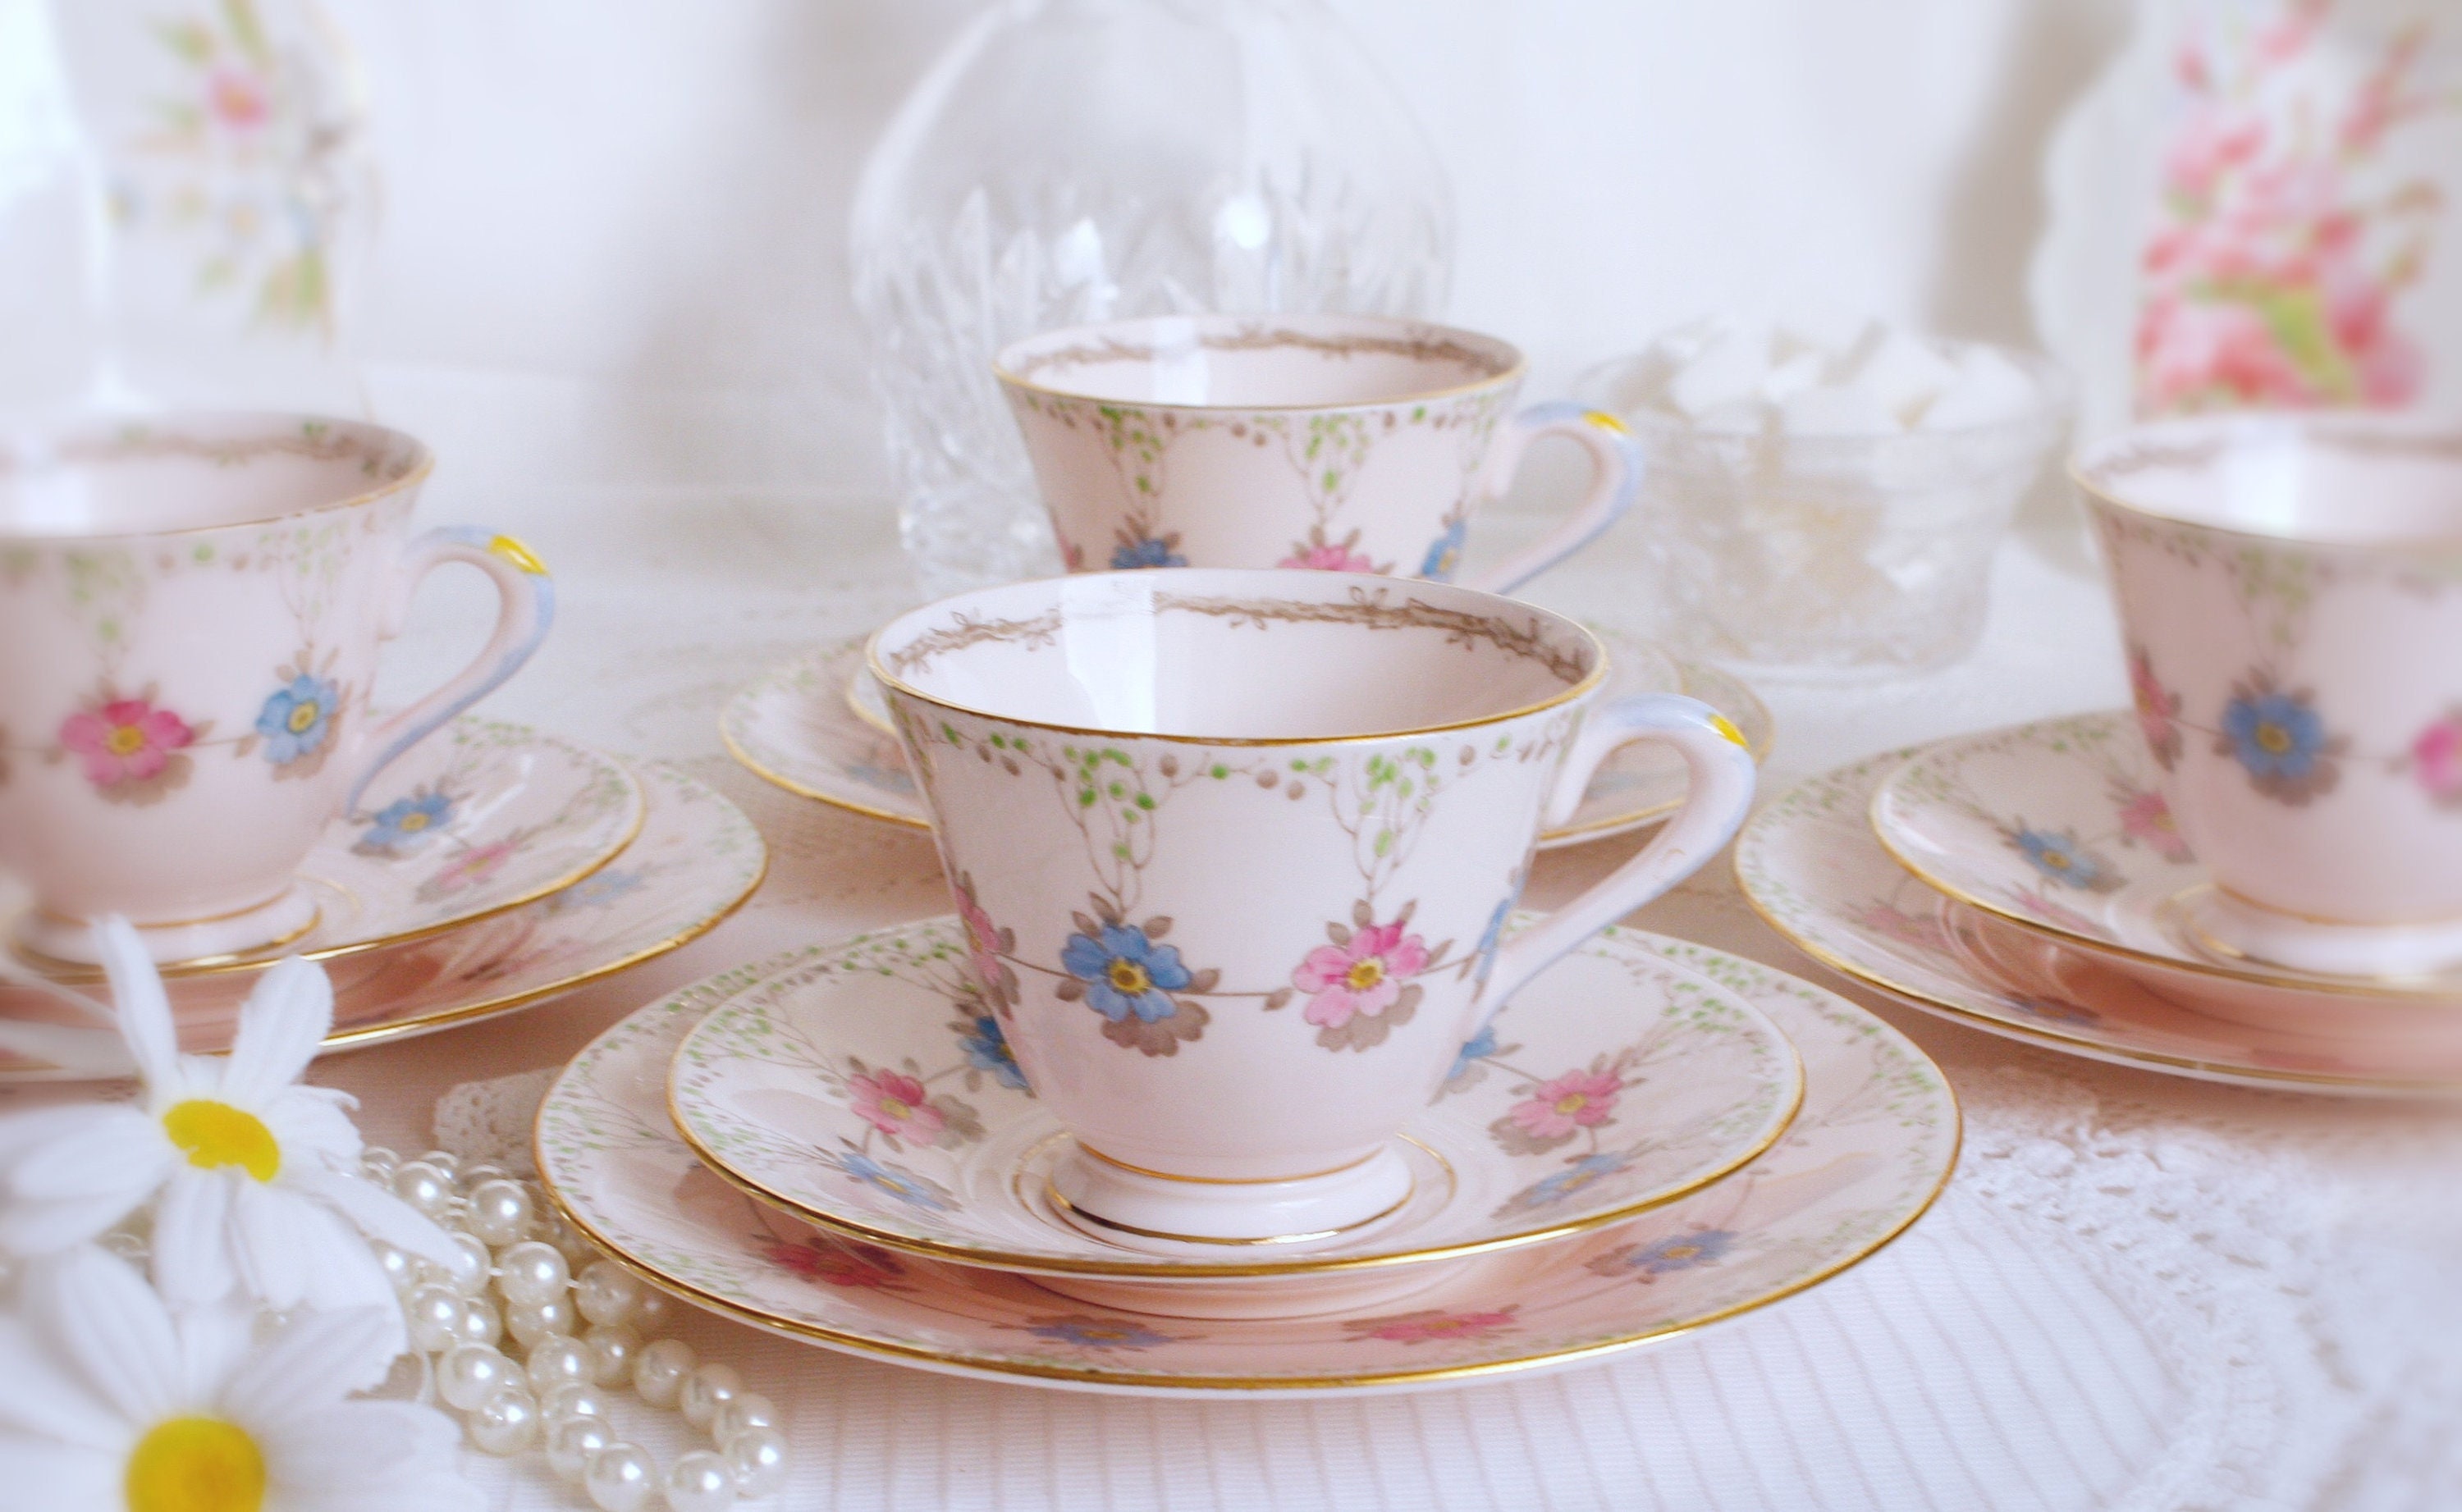 Tuscan DEMITASSE Teacup, Pink Tea Cup and Saucer 18114